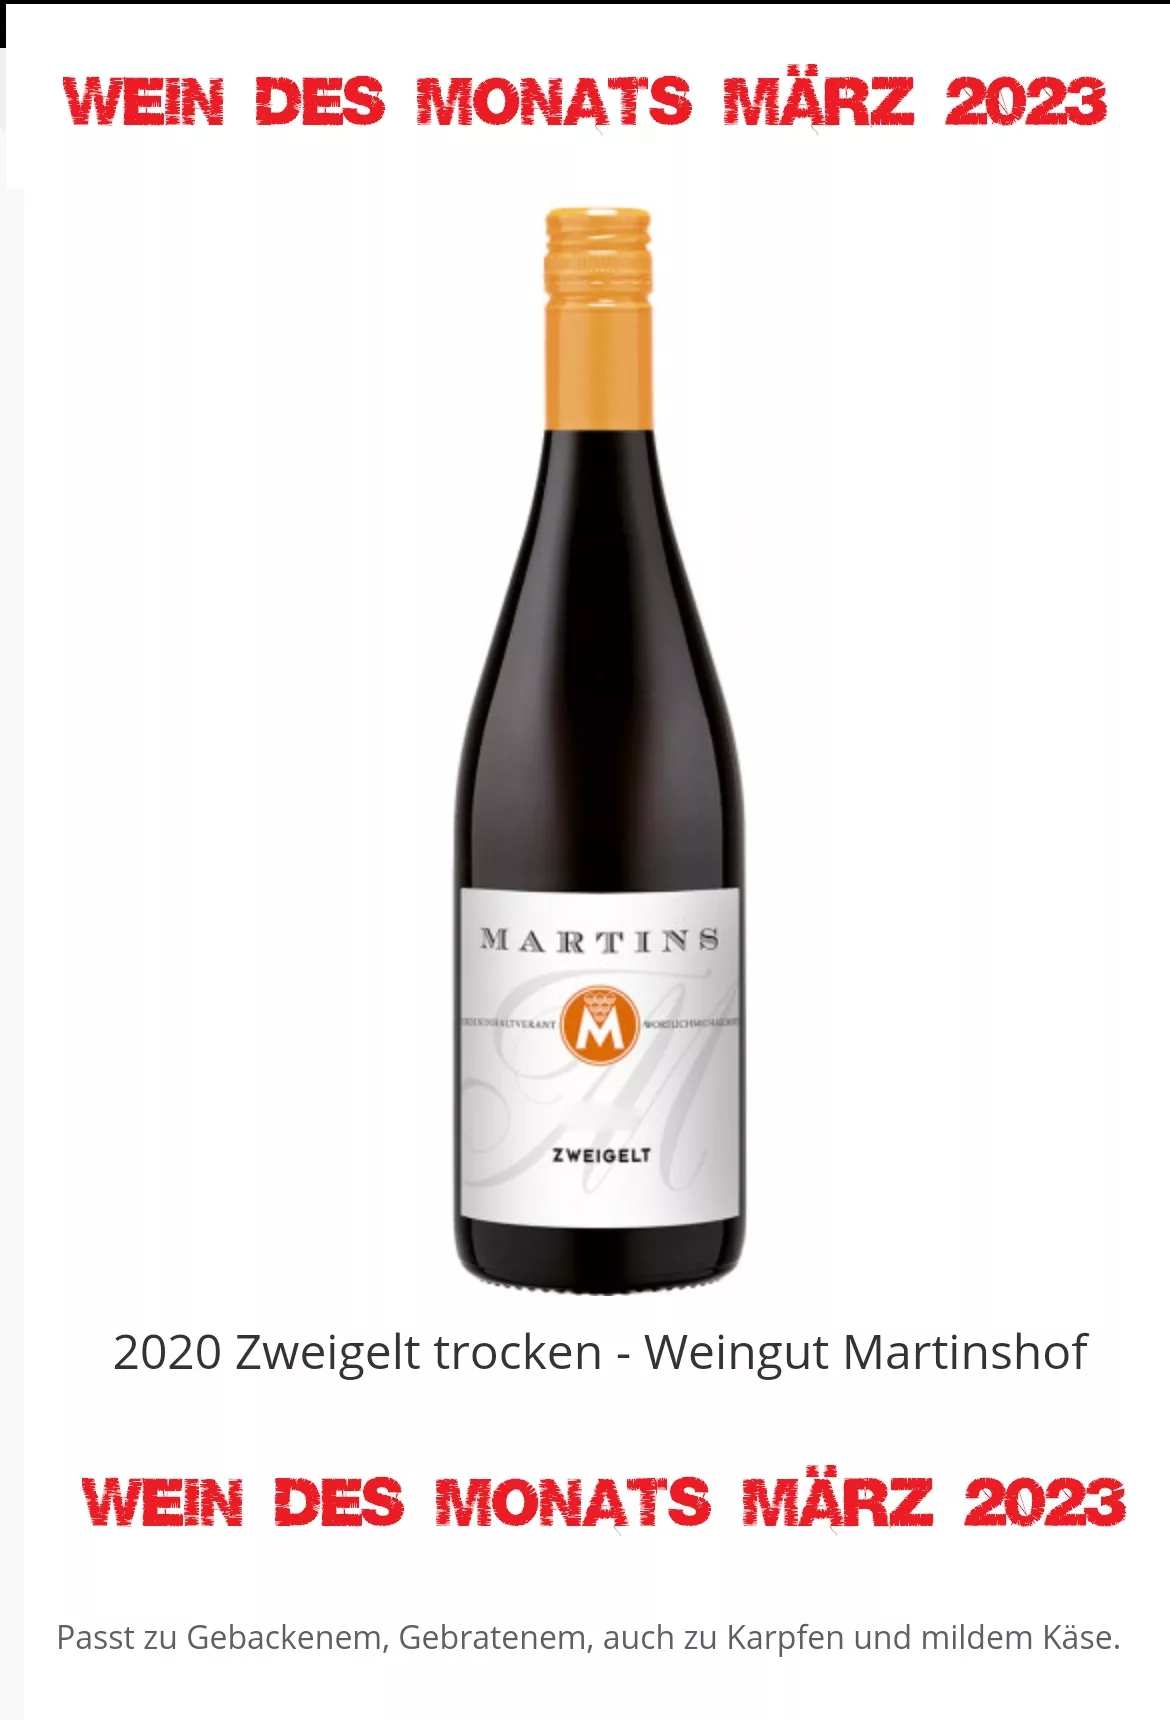 Geheimtipp! 2020 Zweigelt trocken vom Weingut Martinshof